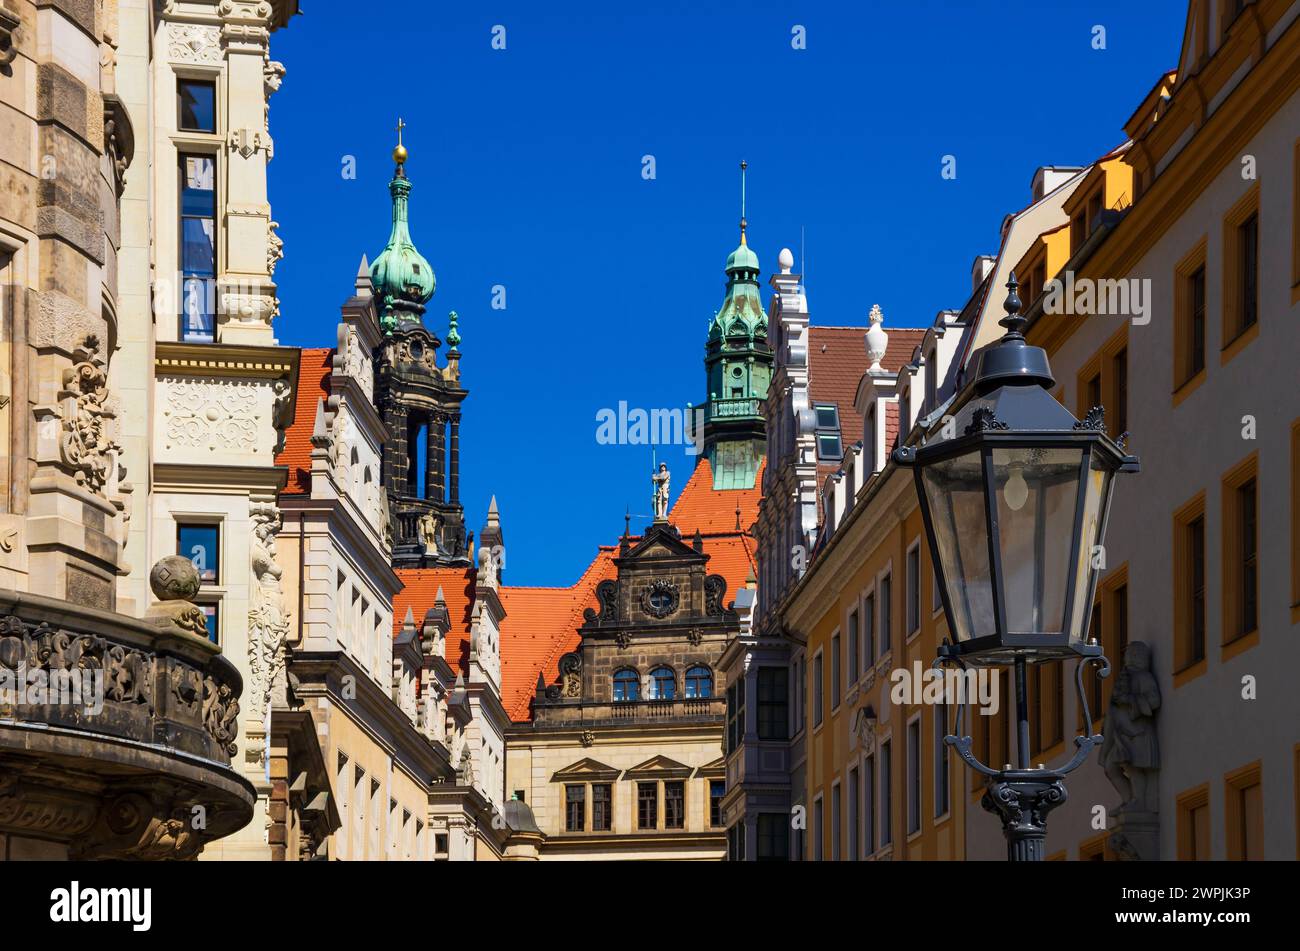 Storico complesso architettonico del palazzo residenziale a Dresda in Sassonia, Germania. Foto Stock